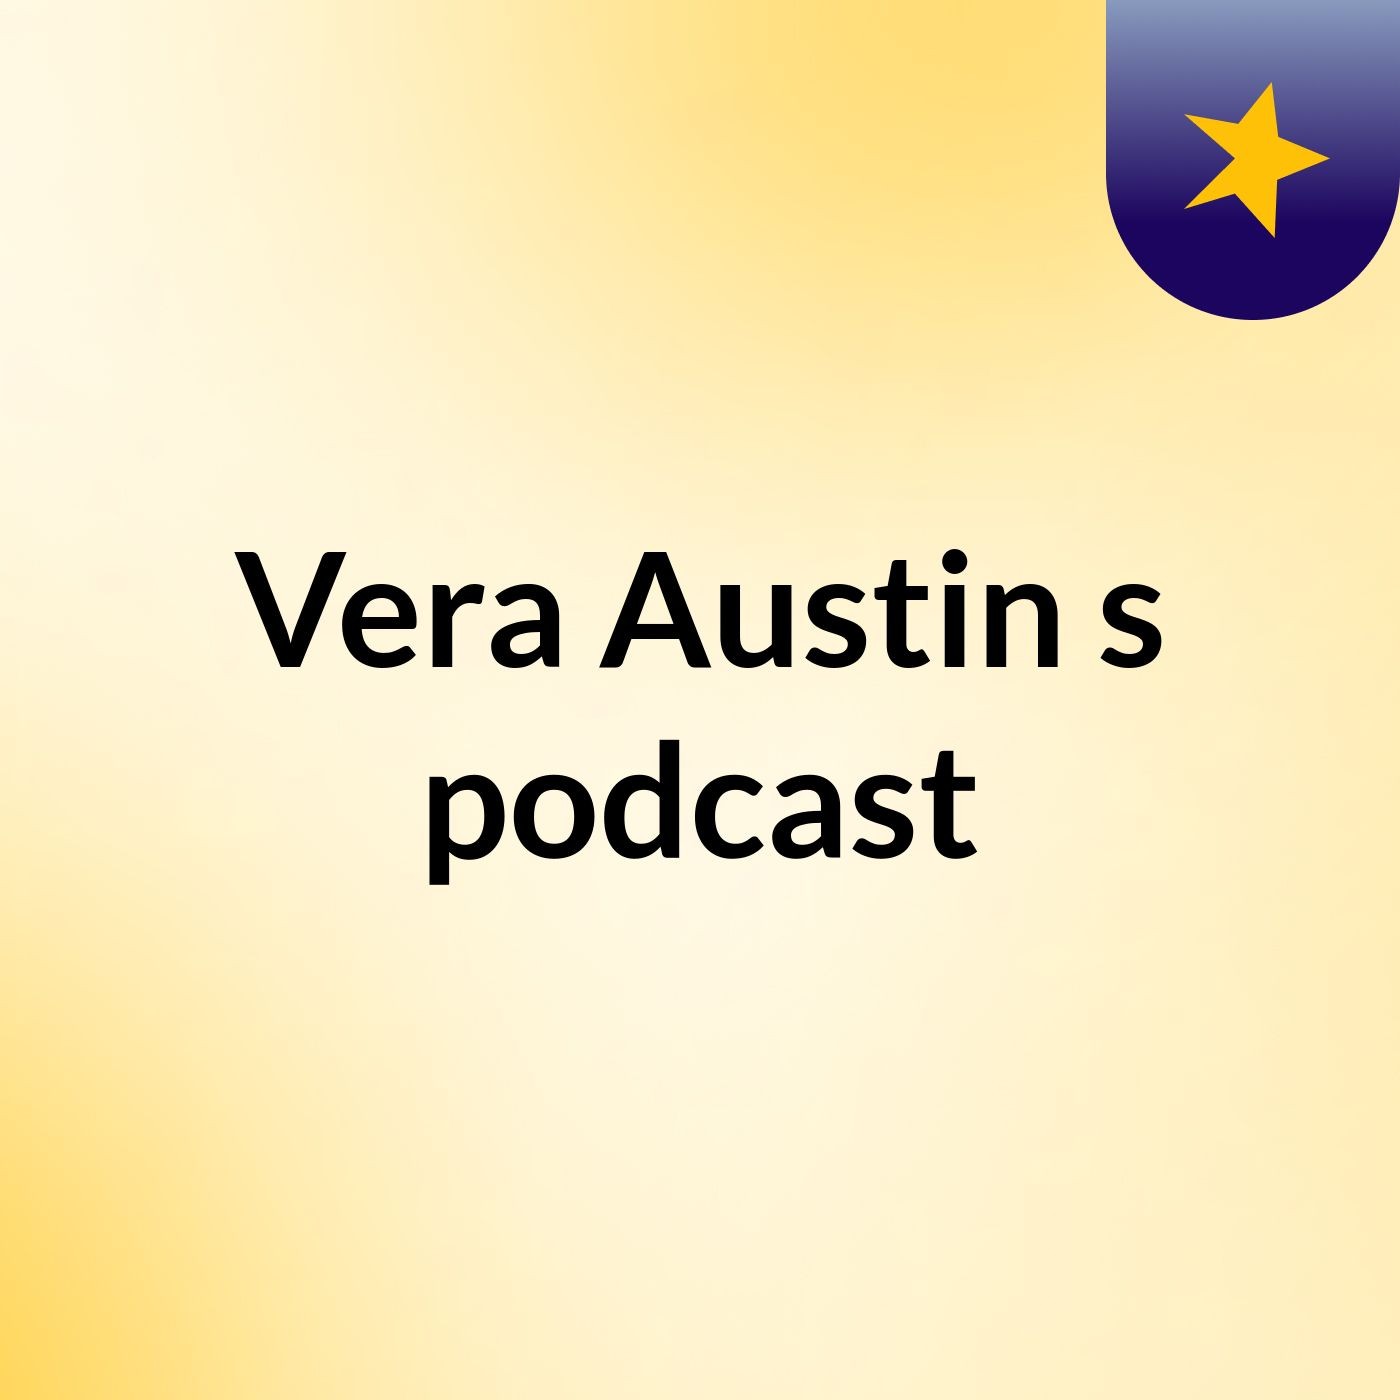 Vera Austin's podcast